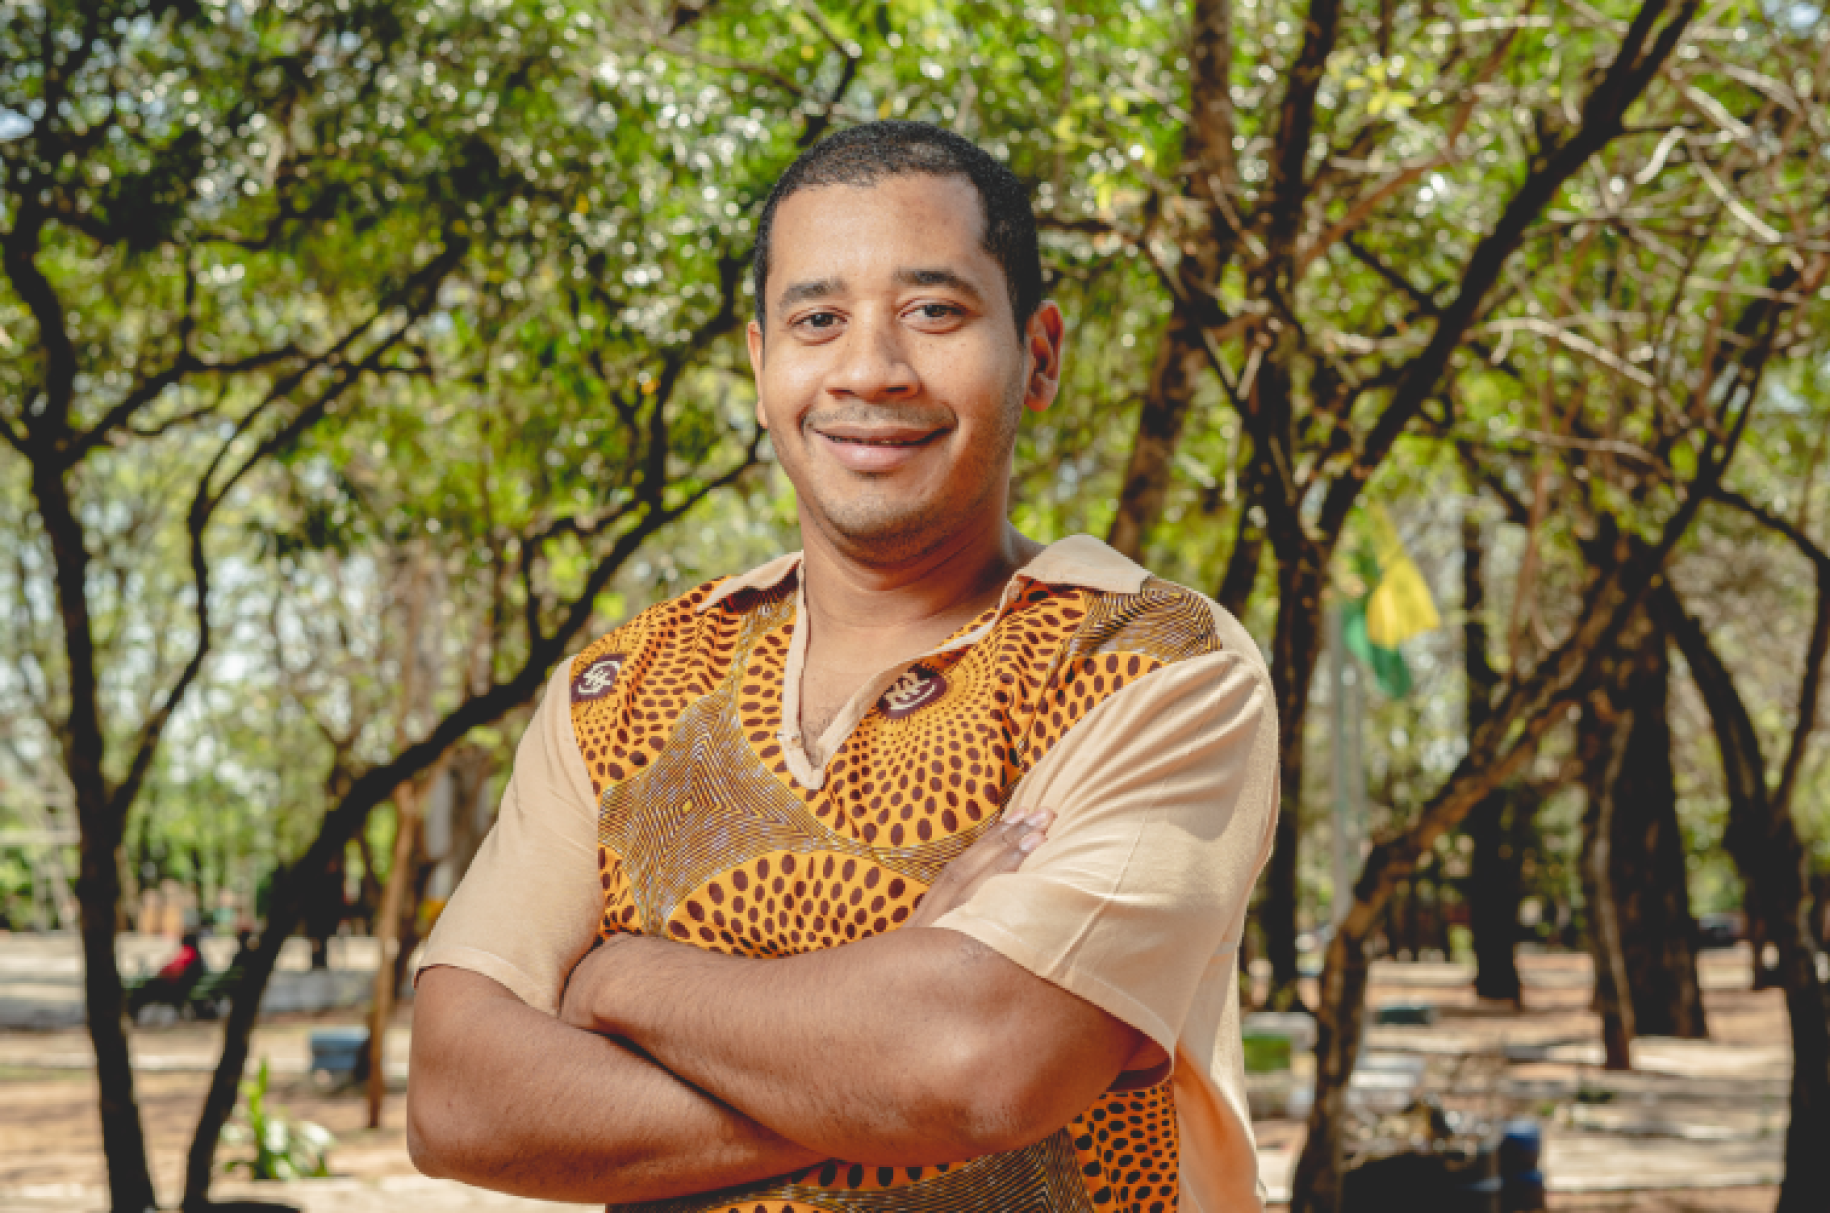 Au Paraguay, un homme portant une chemise de couleur moutarde pose devant la caméra, les bras croisés, en soutiant, au milieu d'un espace boisé.